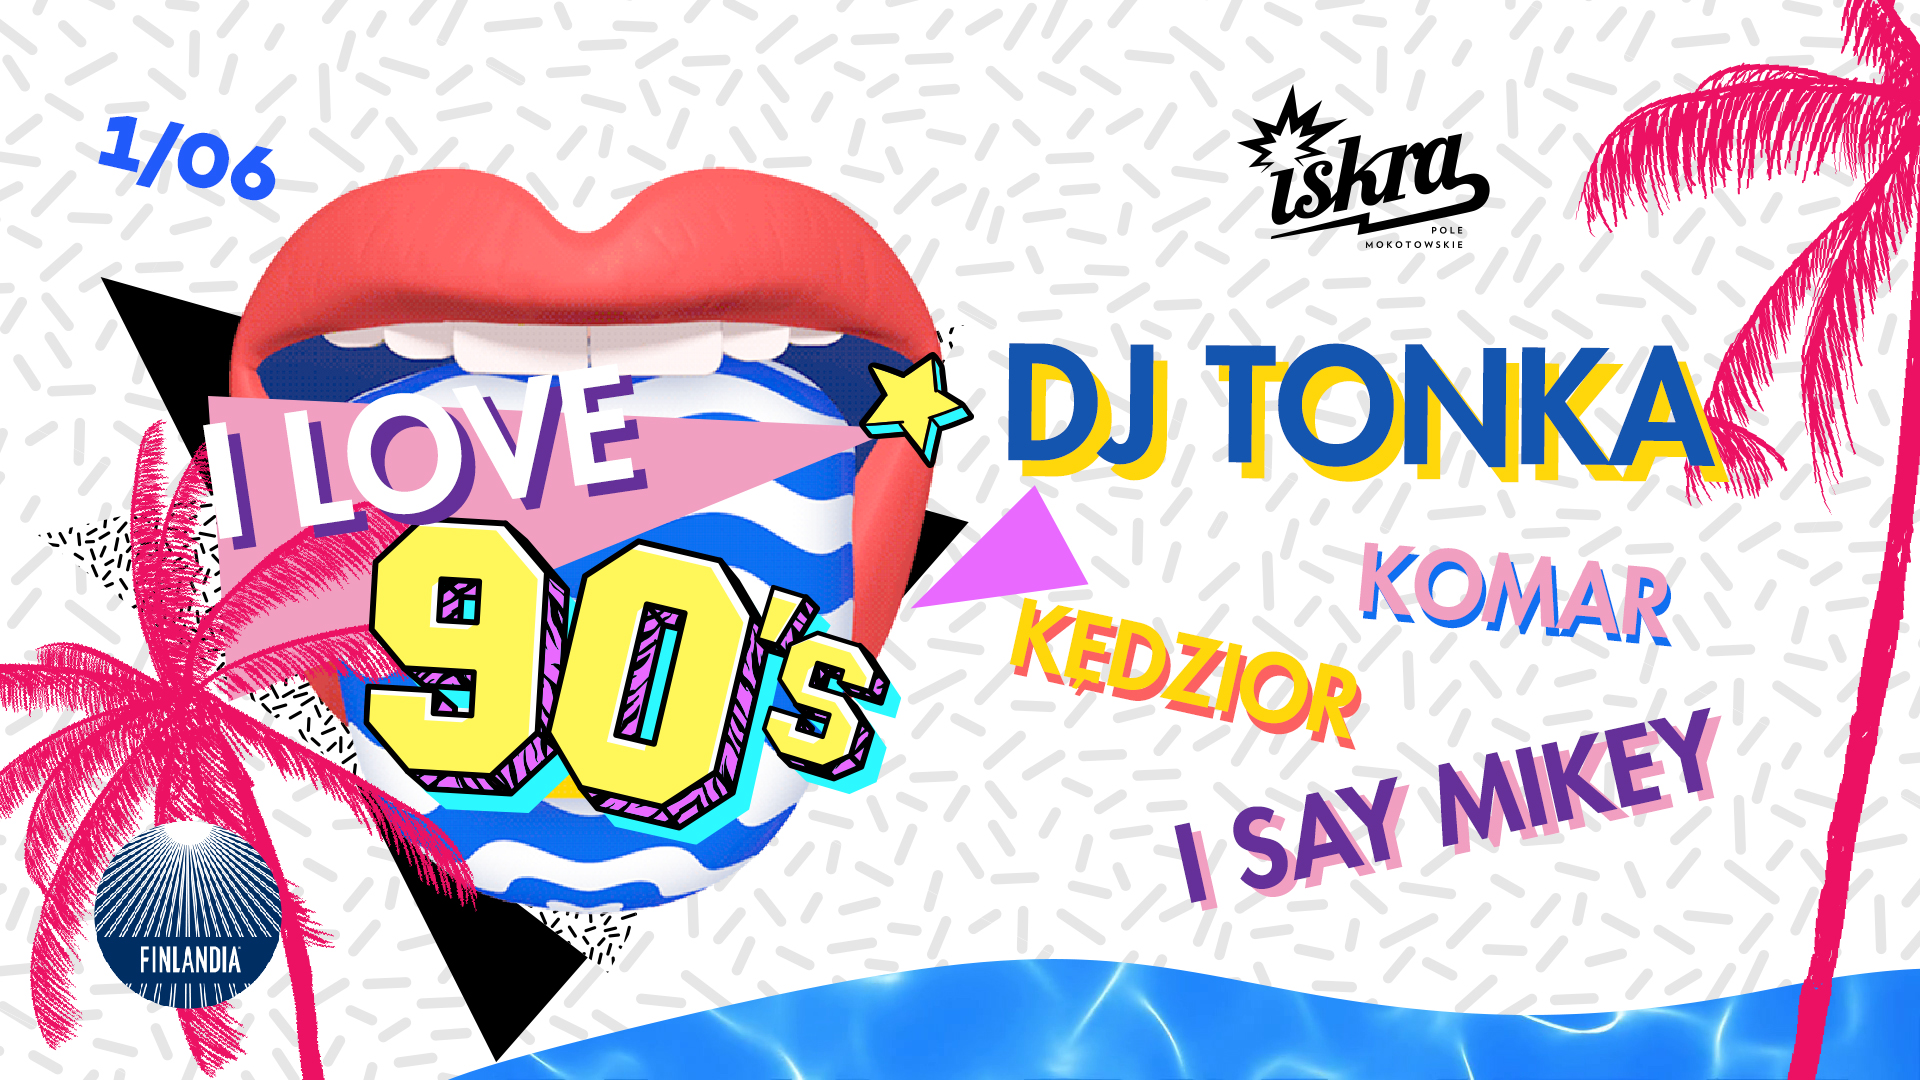 FINAL Czerwiec przywitamy muzycznym powrotem do lat 90. DJ TONKA zagra w Iskrze!